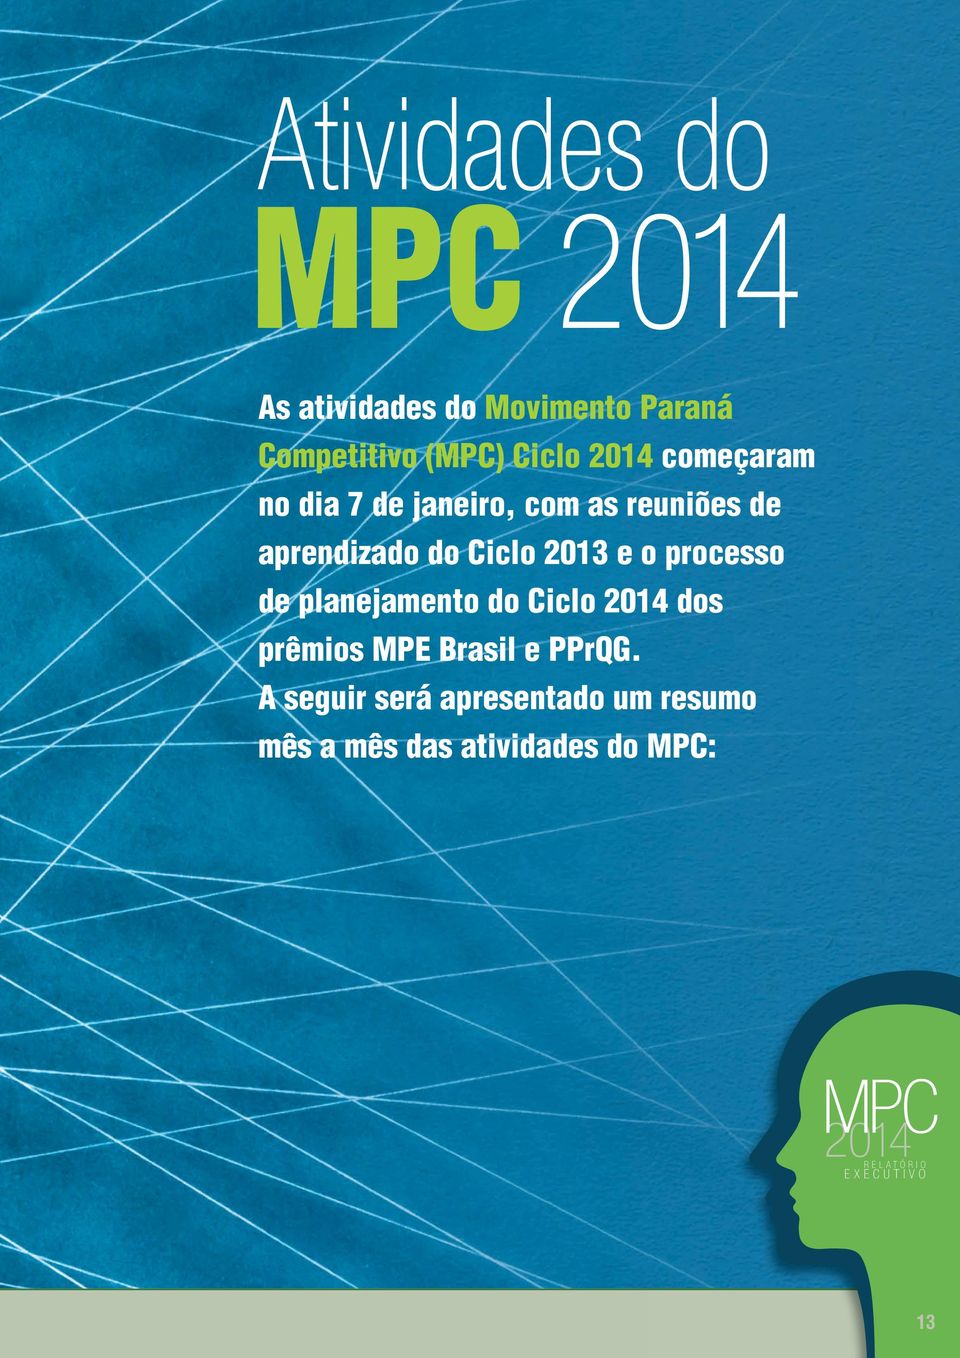 de plaejameto do Ciclo 2014 dos prêmios MPE Brasil e PPrQG.